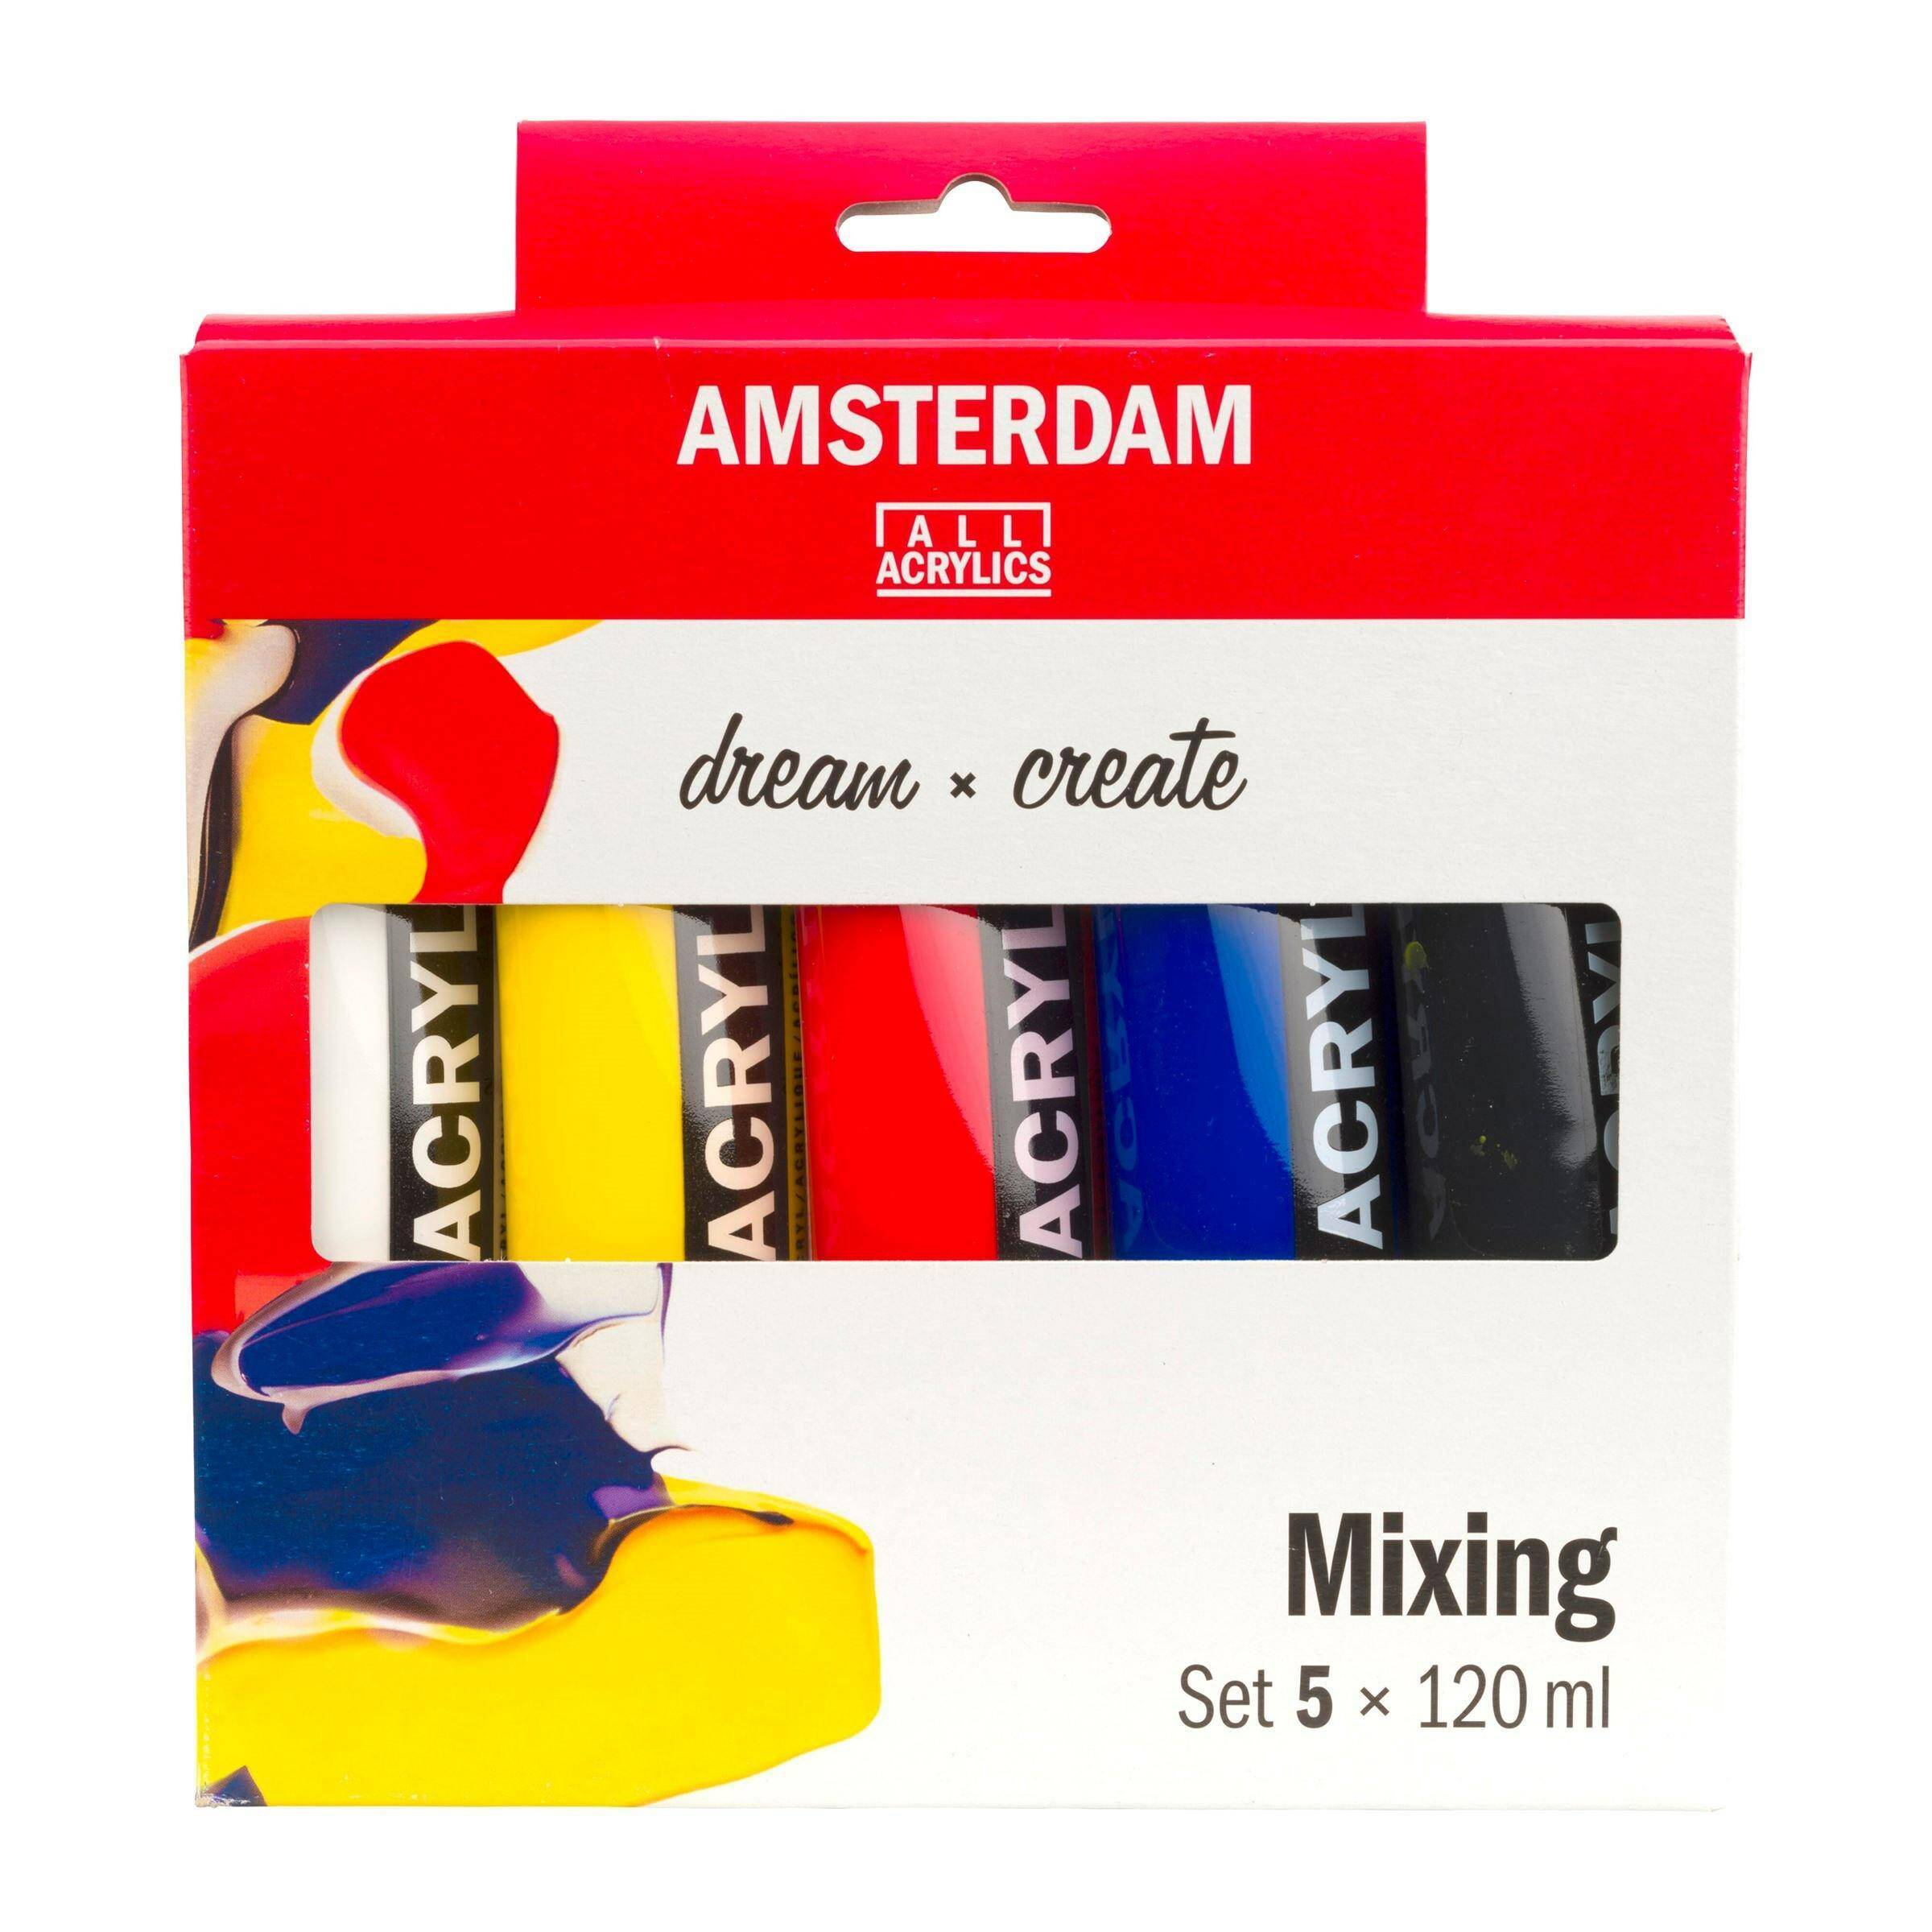 Zestaw Amsterdam Acrylic 5x120ml Mixing (Zdjęcie 1)